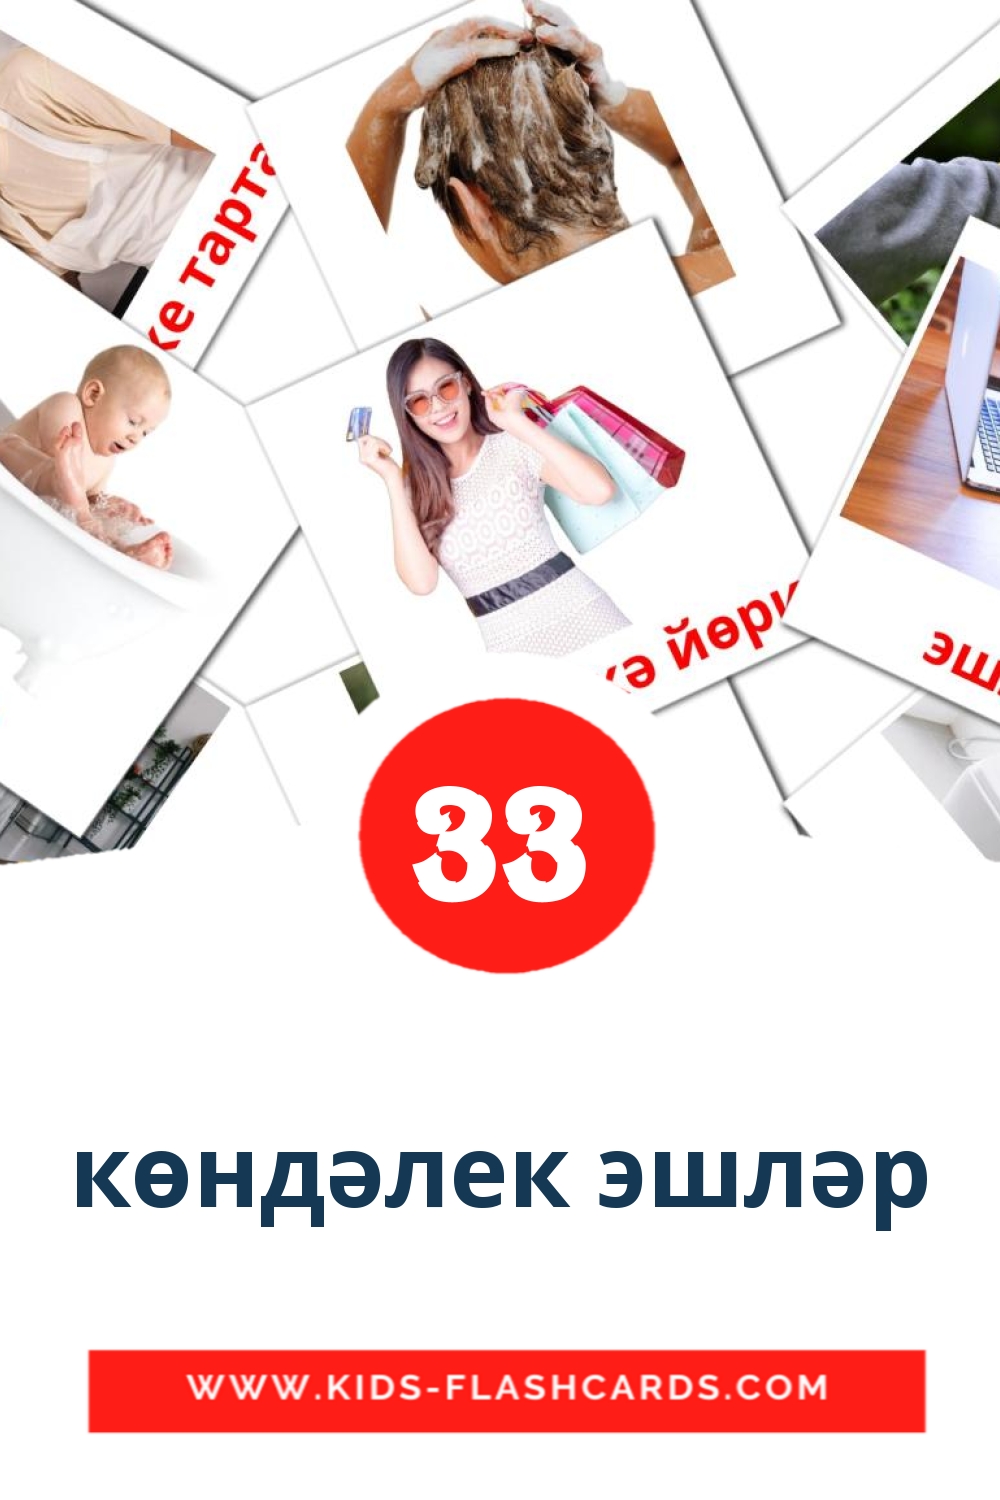 33 Көндəлек эшлəр fotokaarten voor kleuters in het tataars